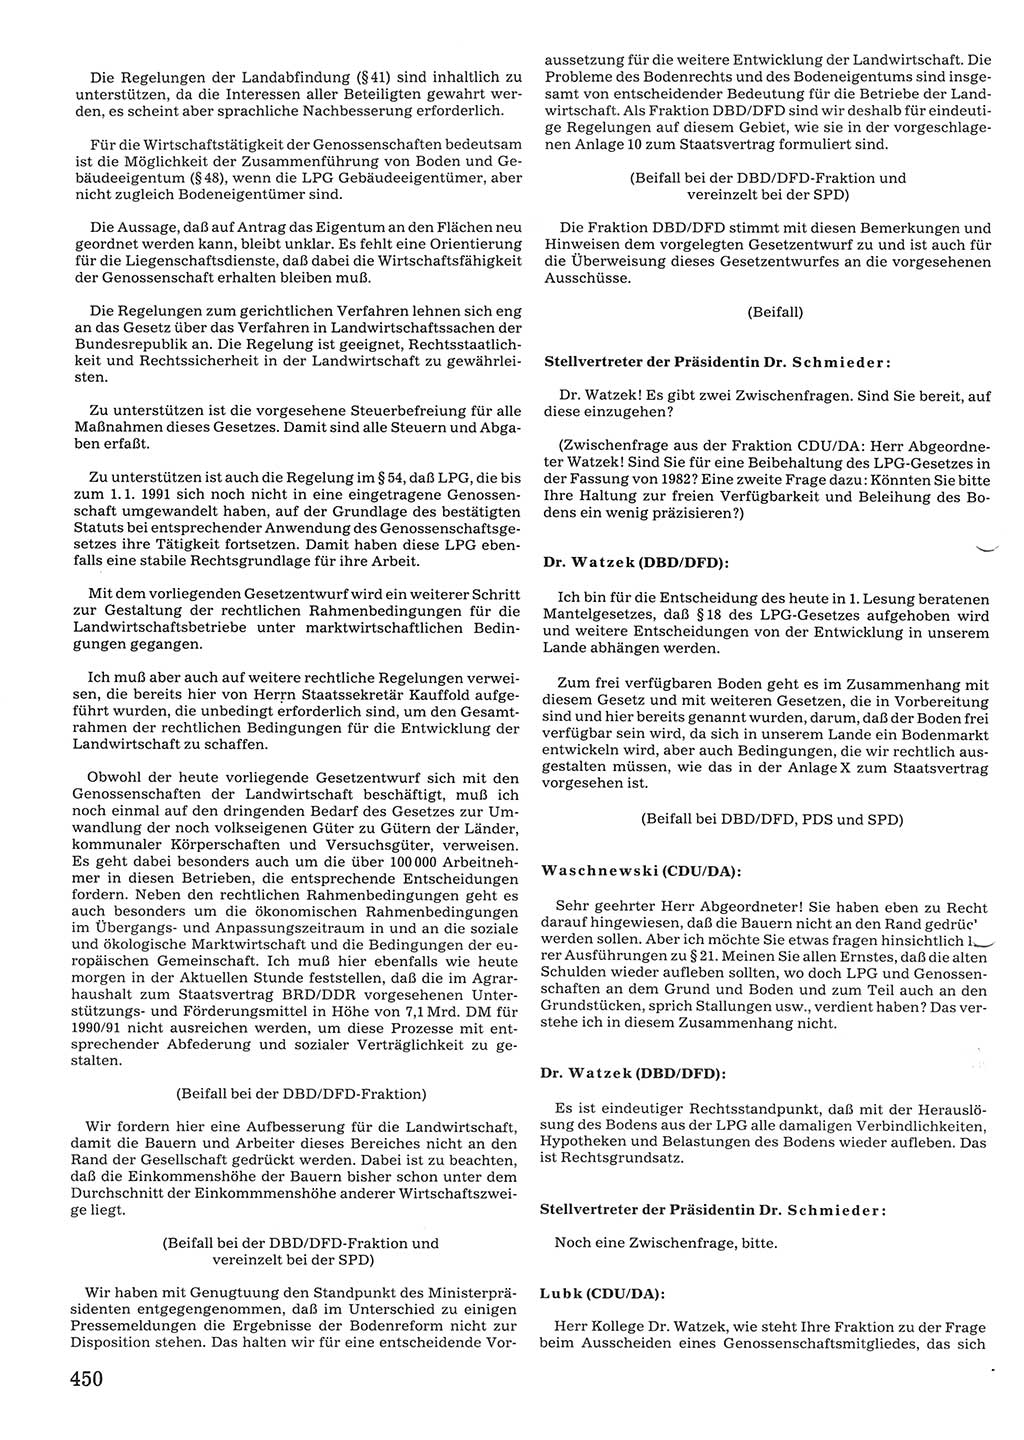 Tagungen der Volkskammer (VK) der Deutschen Demokratischen Republik (DDR), 10. Wahlperiode 1990, Seite 450 (VK. DDR 10. WP. 1990, Prot. Tg. 1-38, 5.4.-2.10.1990, S. 450)